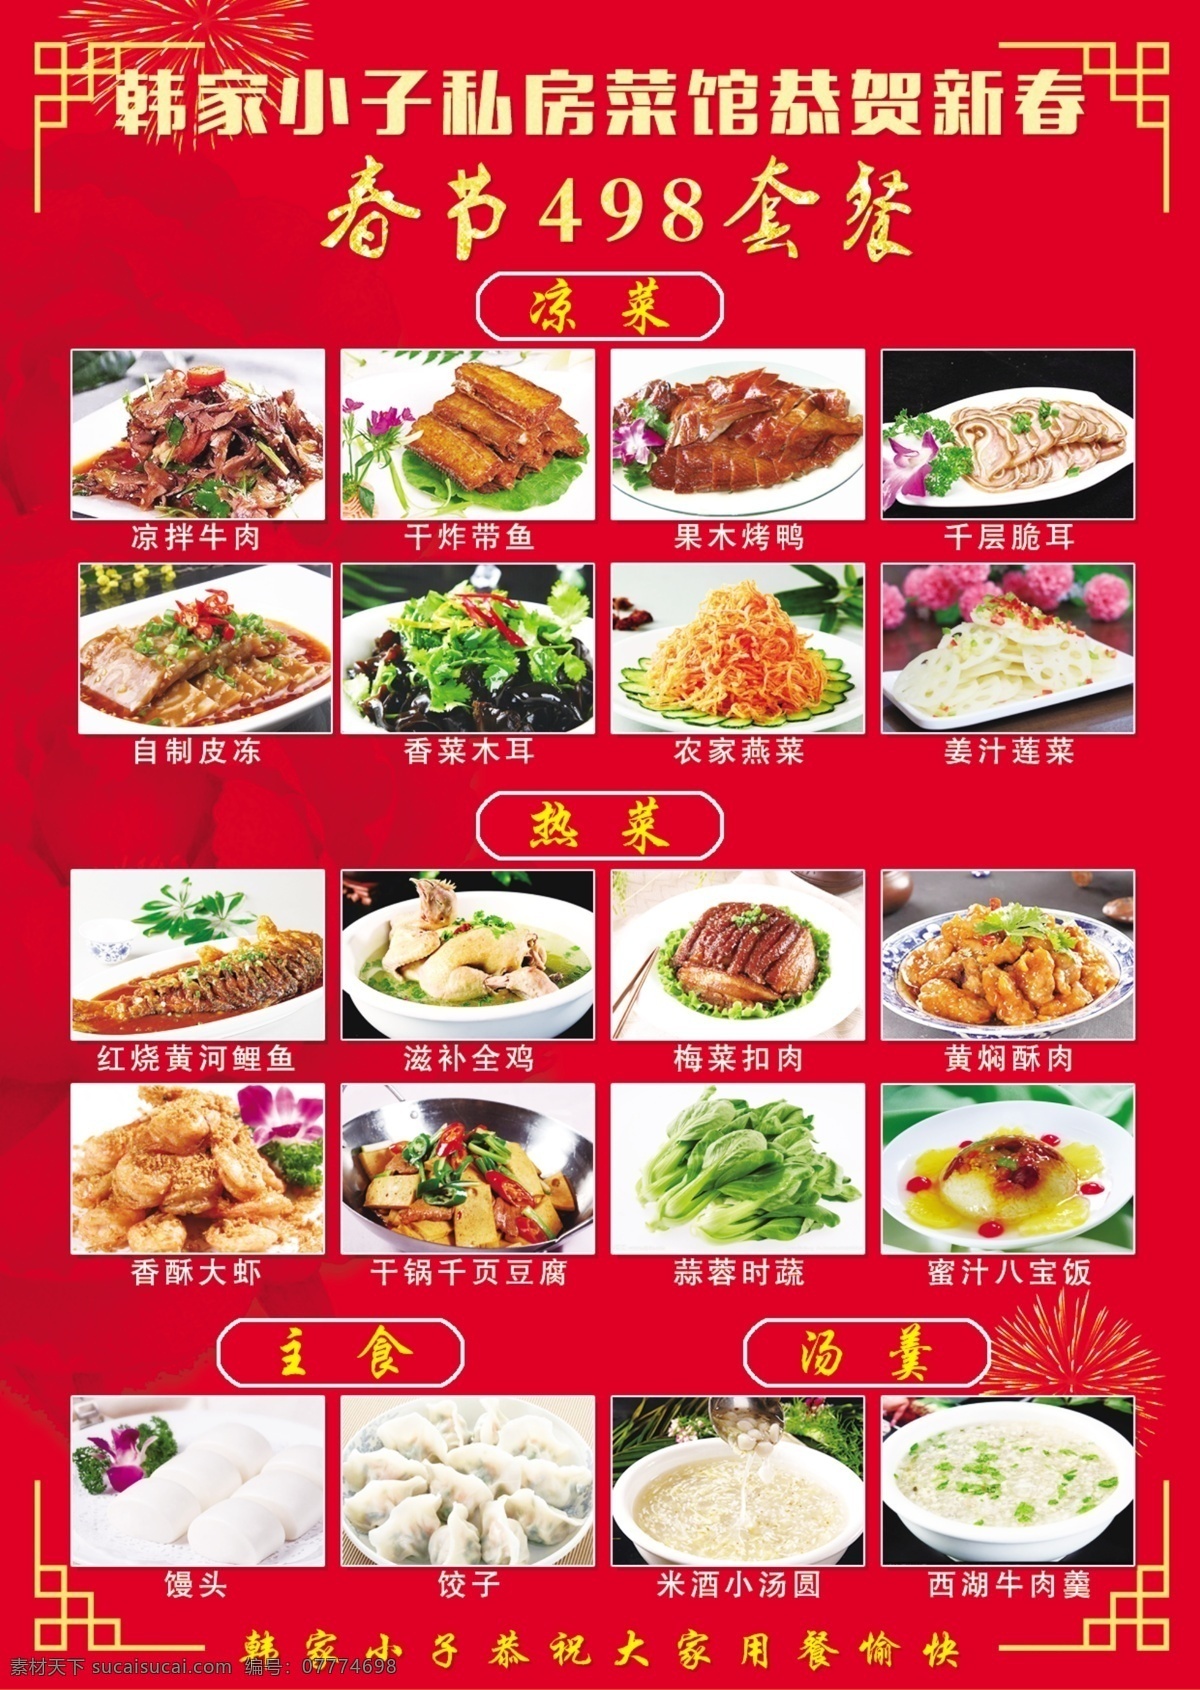 订餐菜单 春节订餐 菜单 美食 菜谱 红色背景